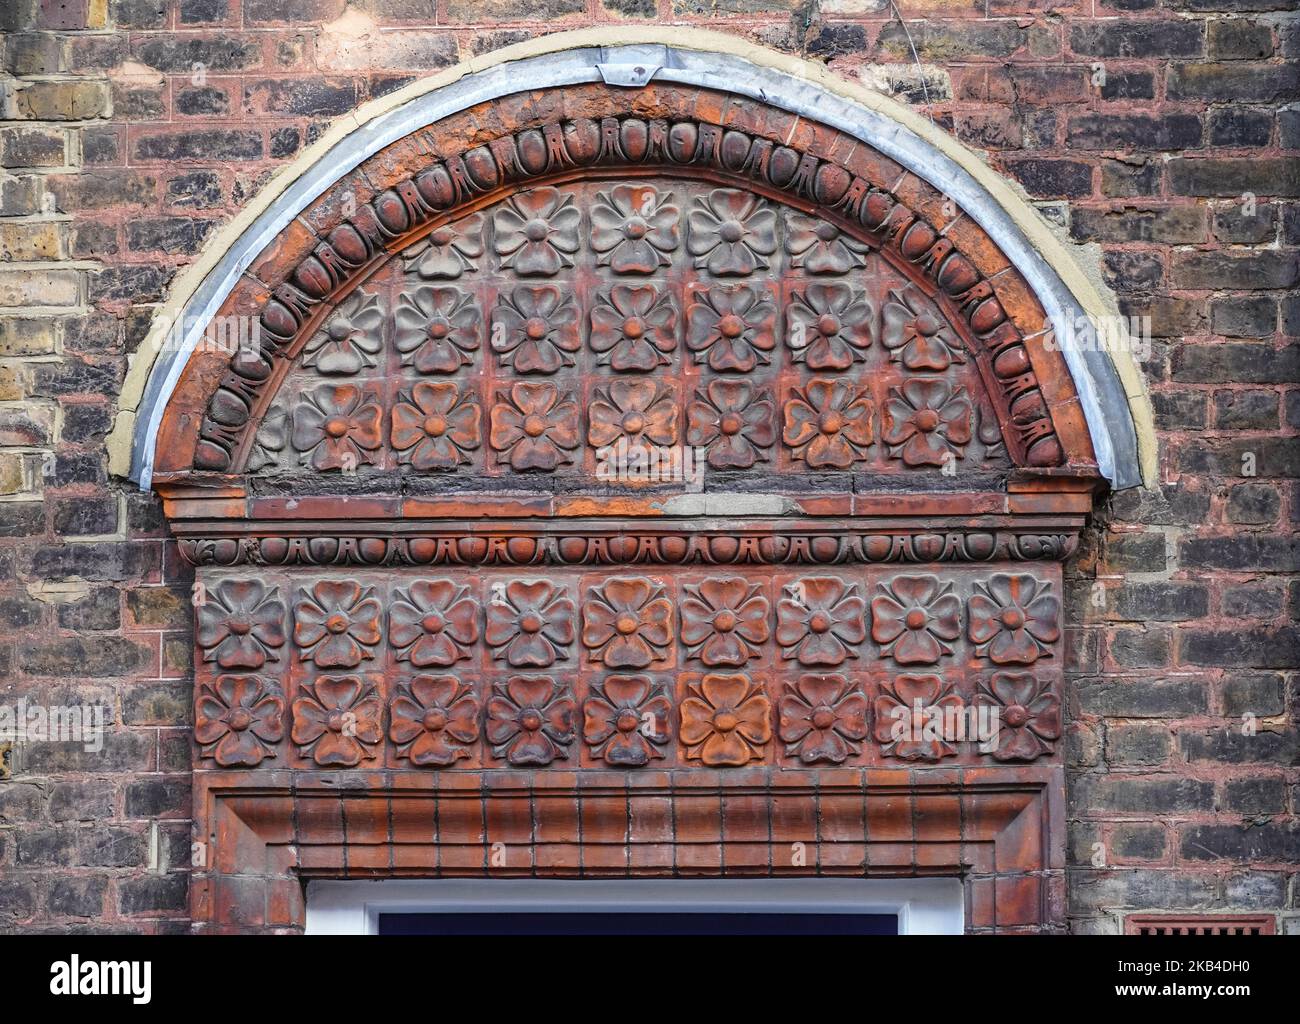 Relief décoratif en brique sur une porte, Londres Angleterre Royaume-Uni Banque D'Images